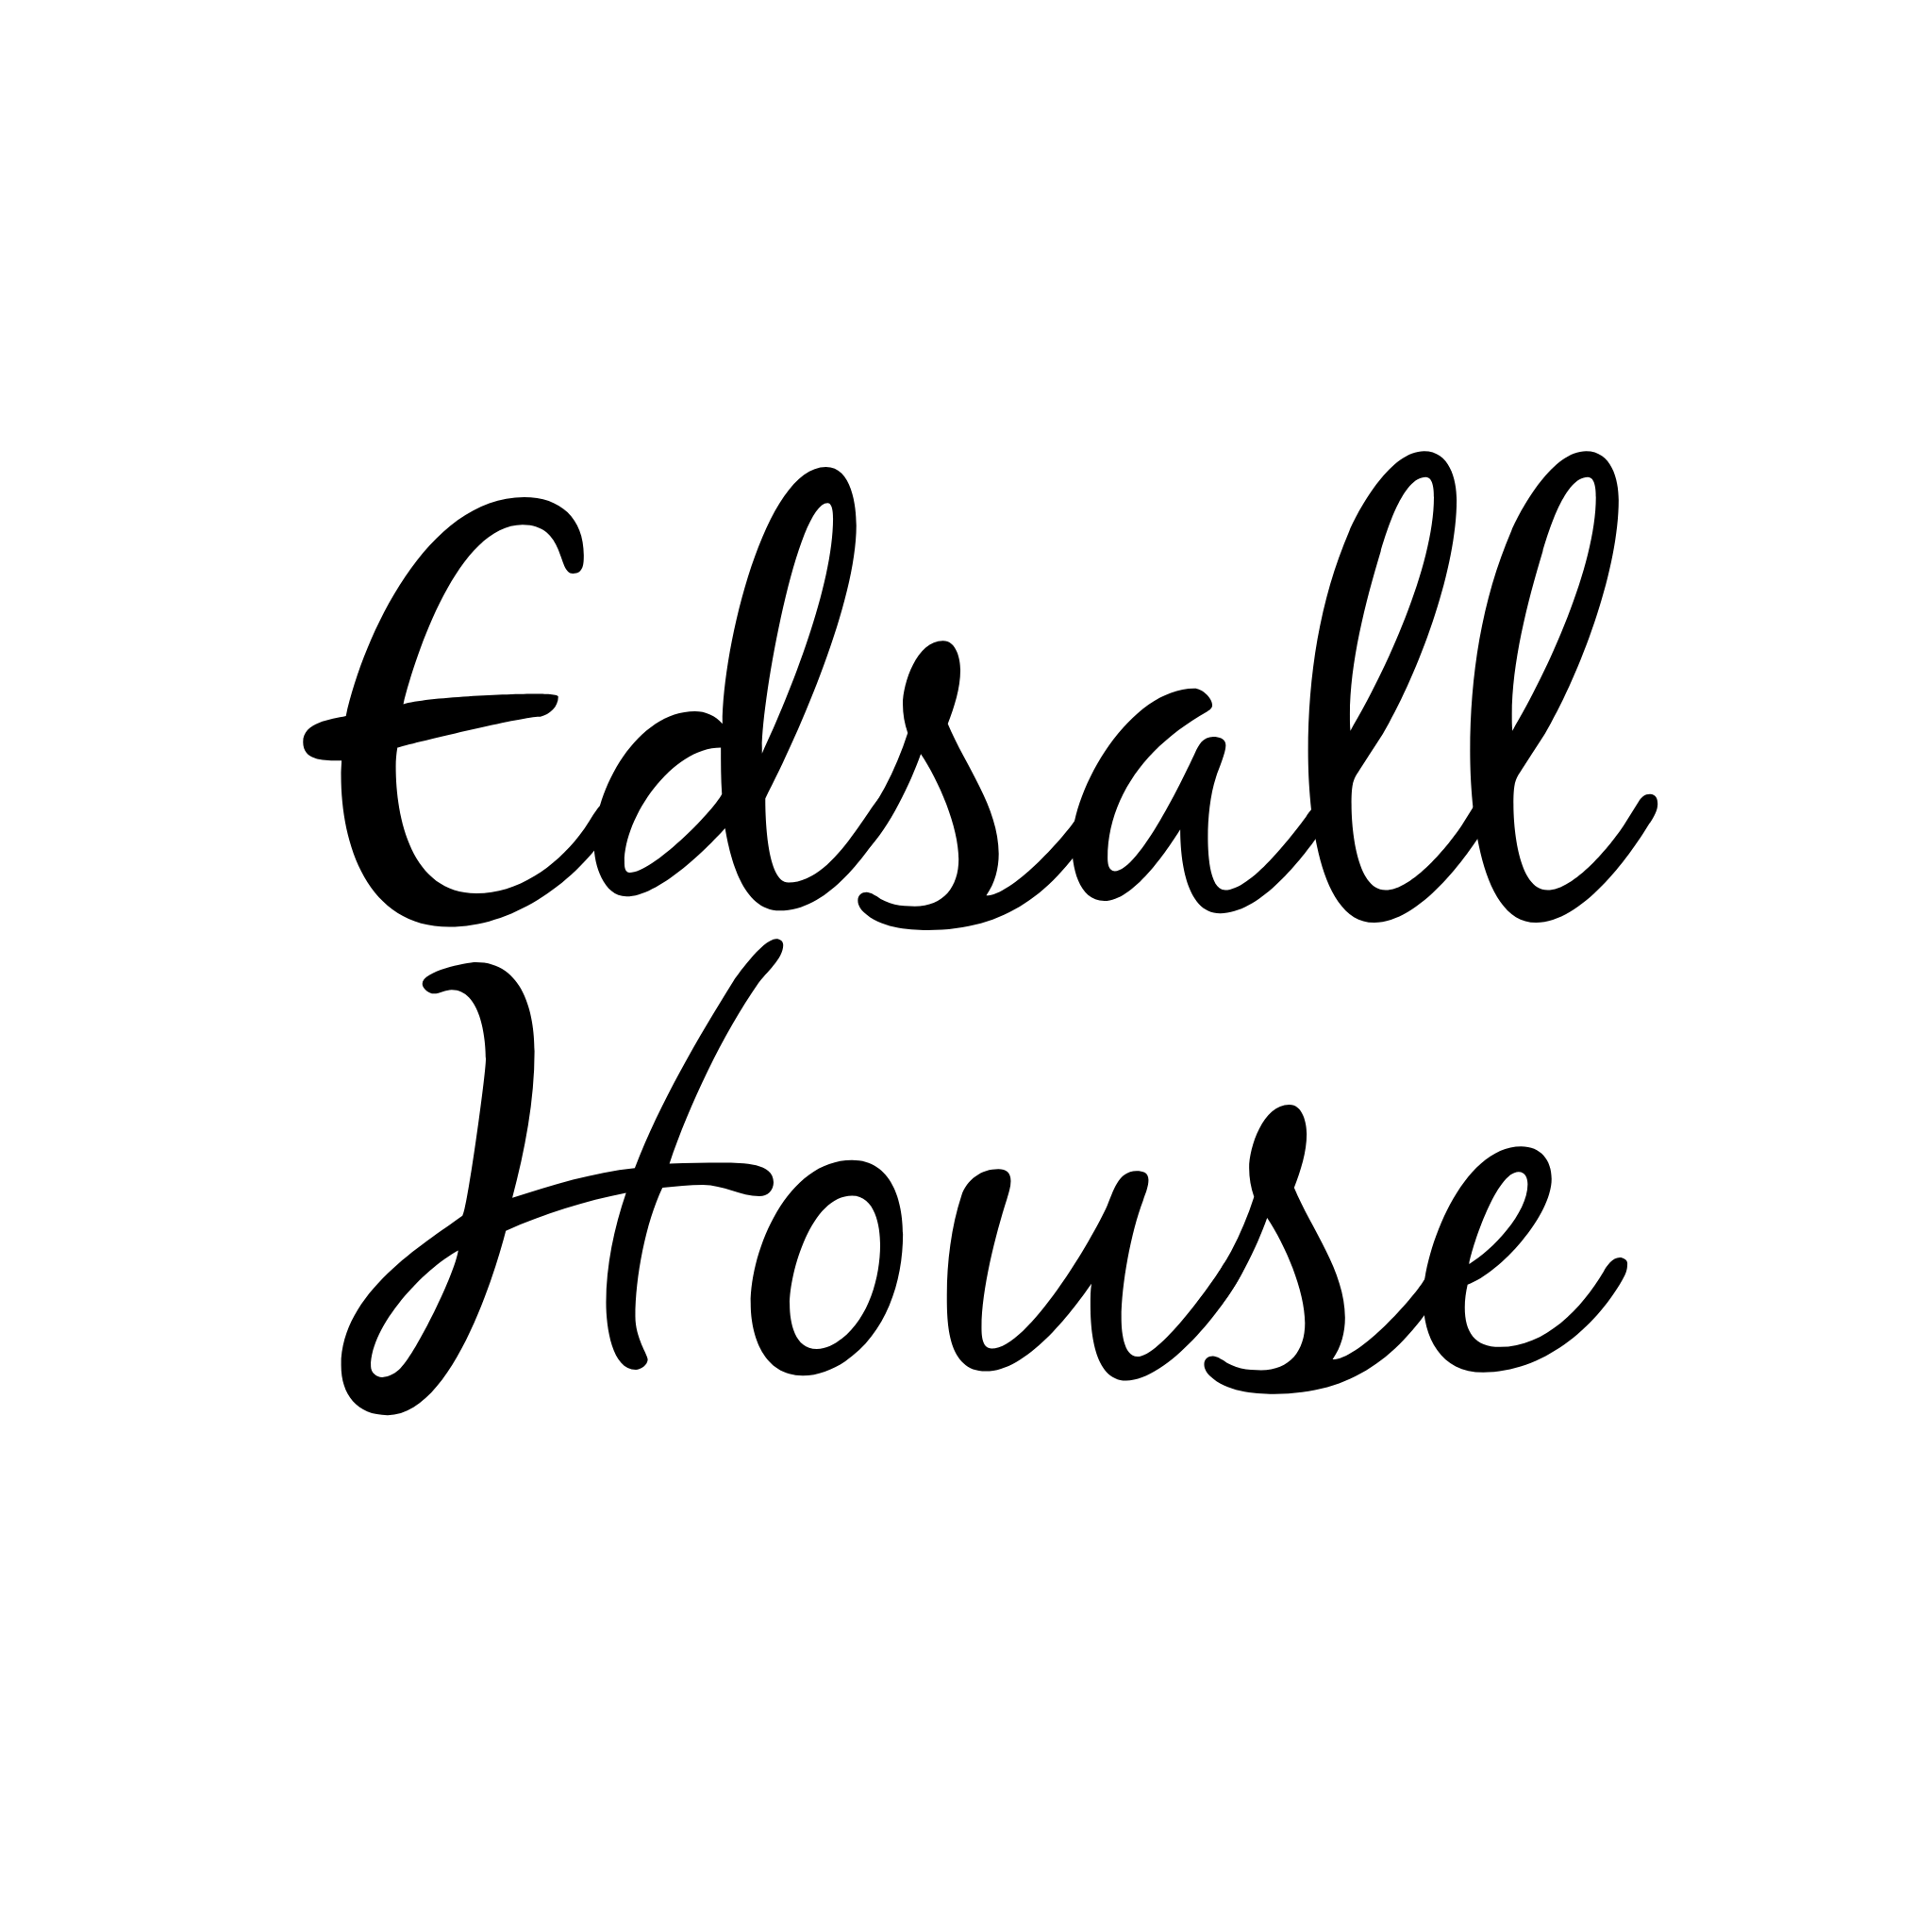 Edsall House